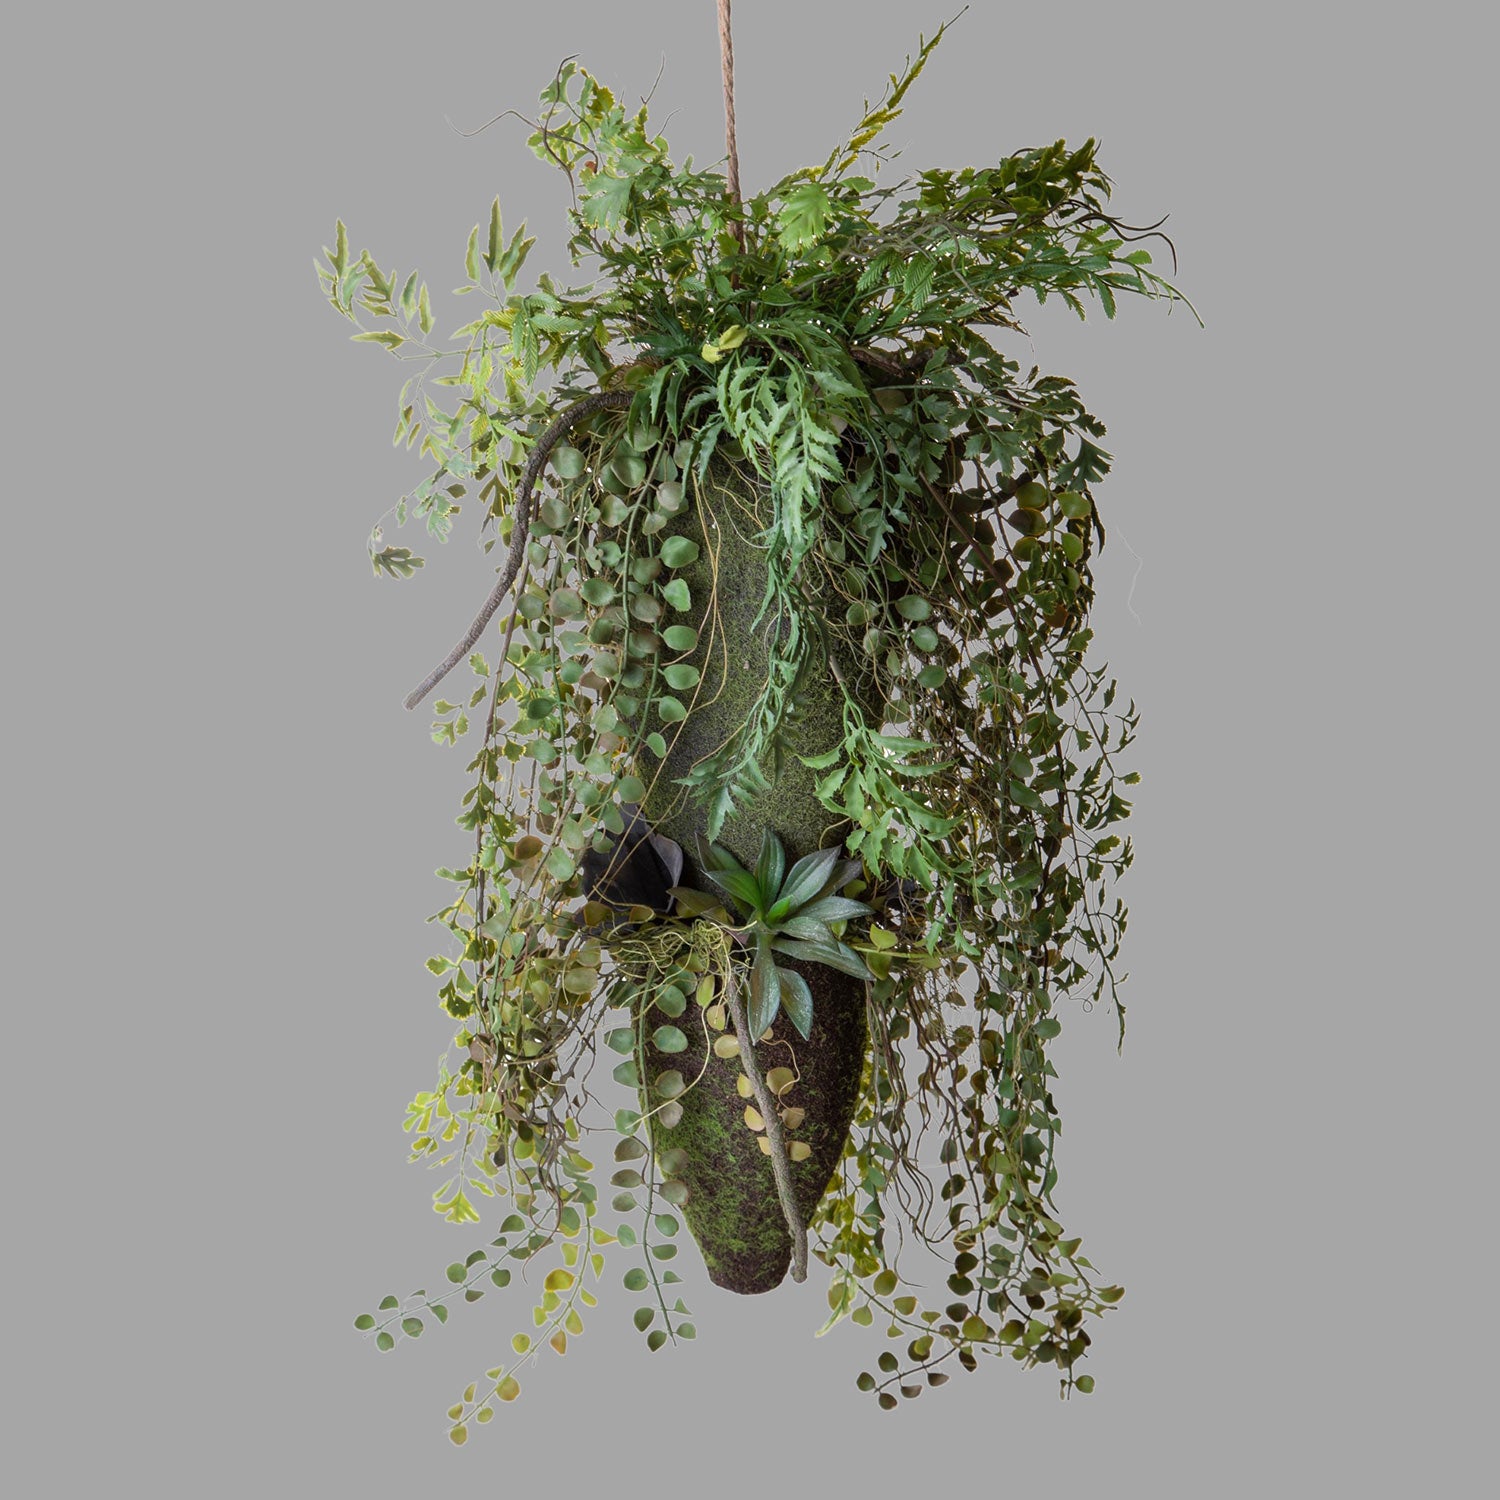 Különböző fajtájú, zöld műnövényekből készült, függeszthető dekoráció.